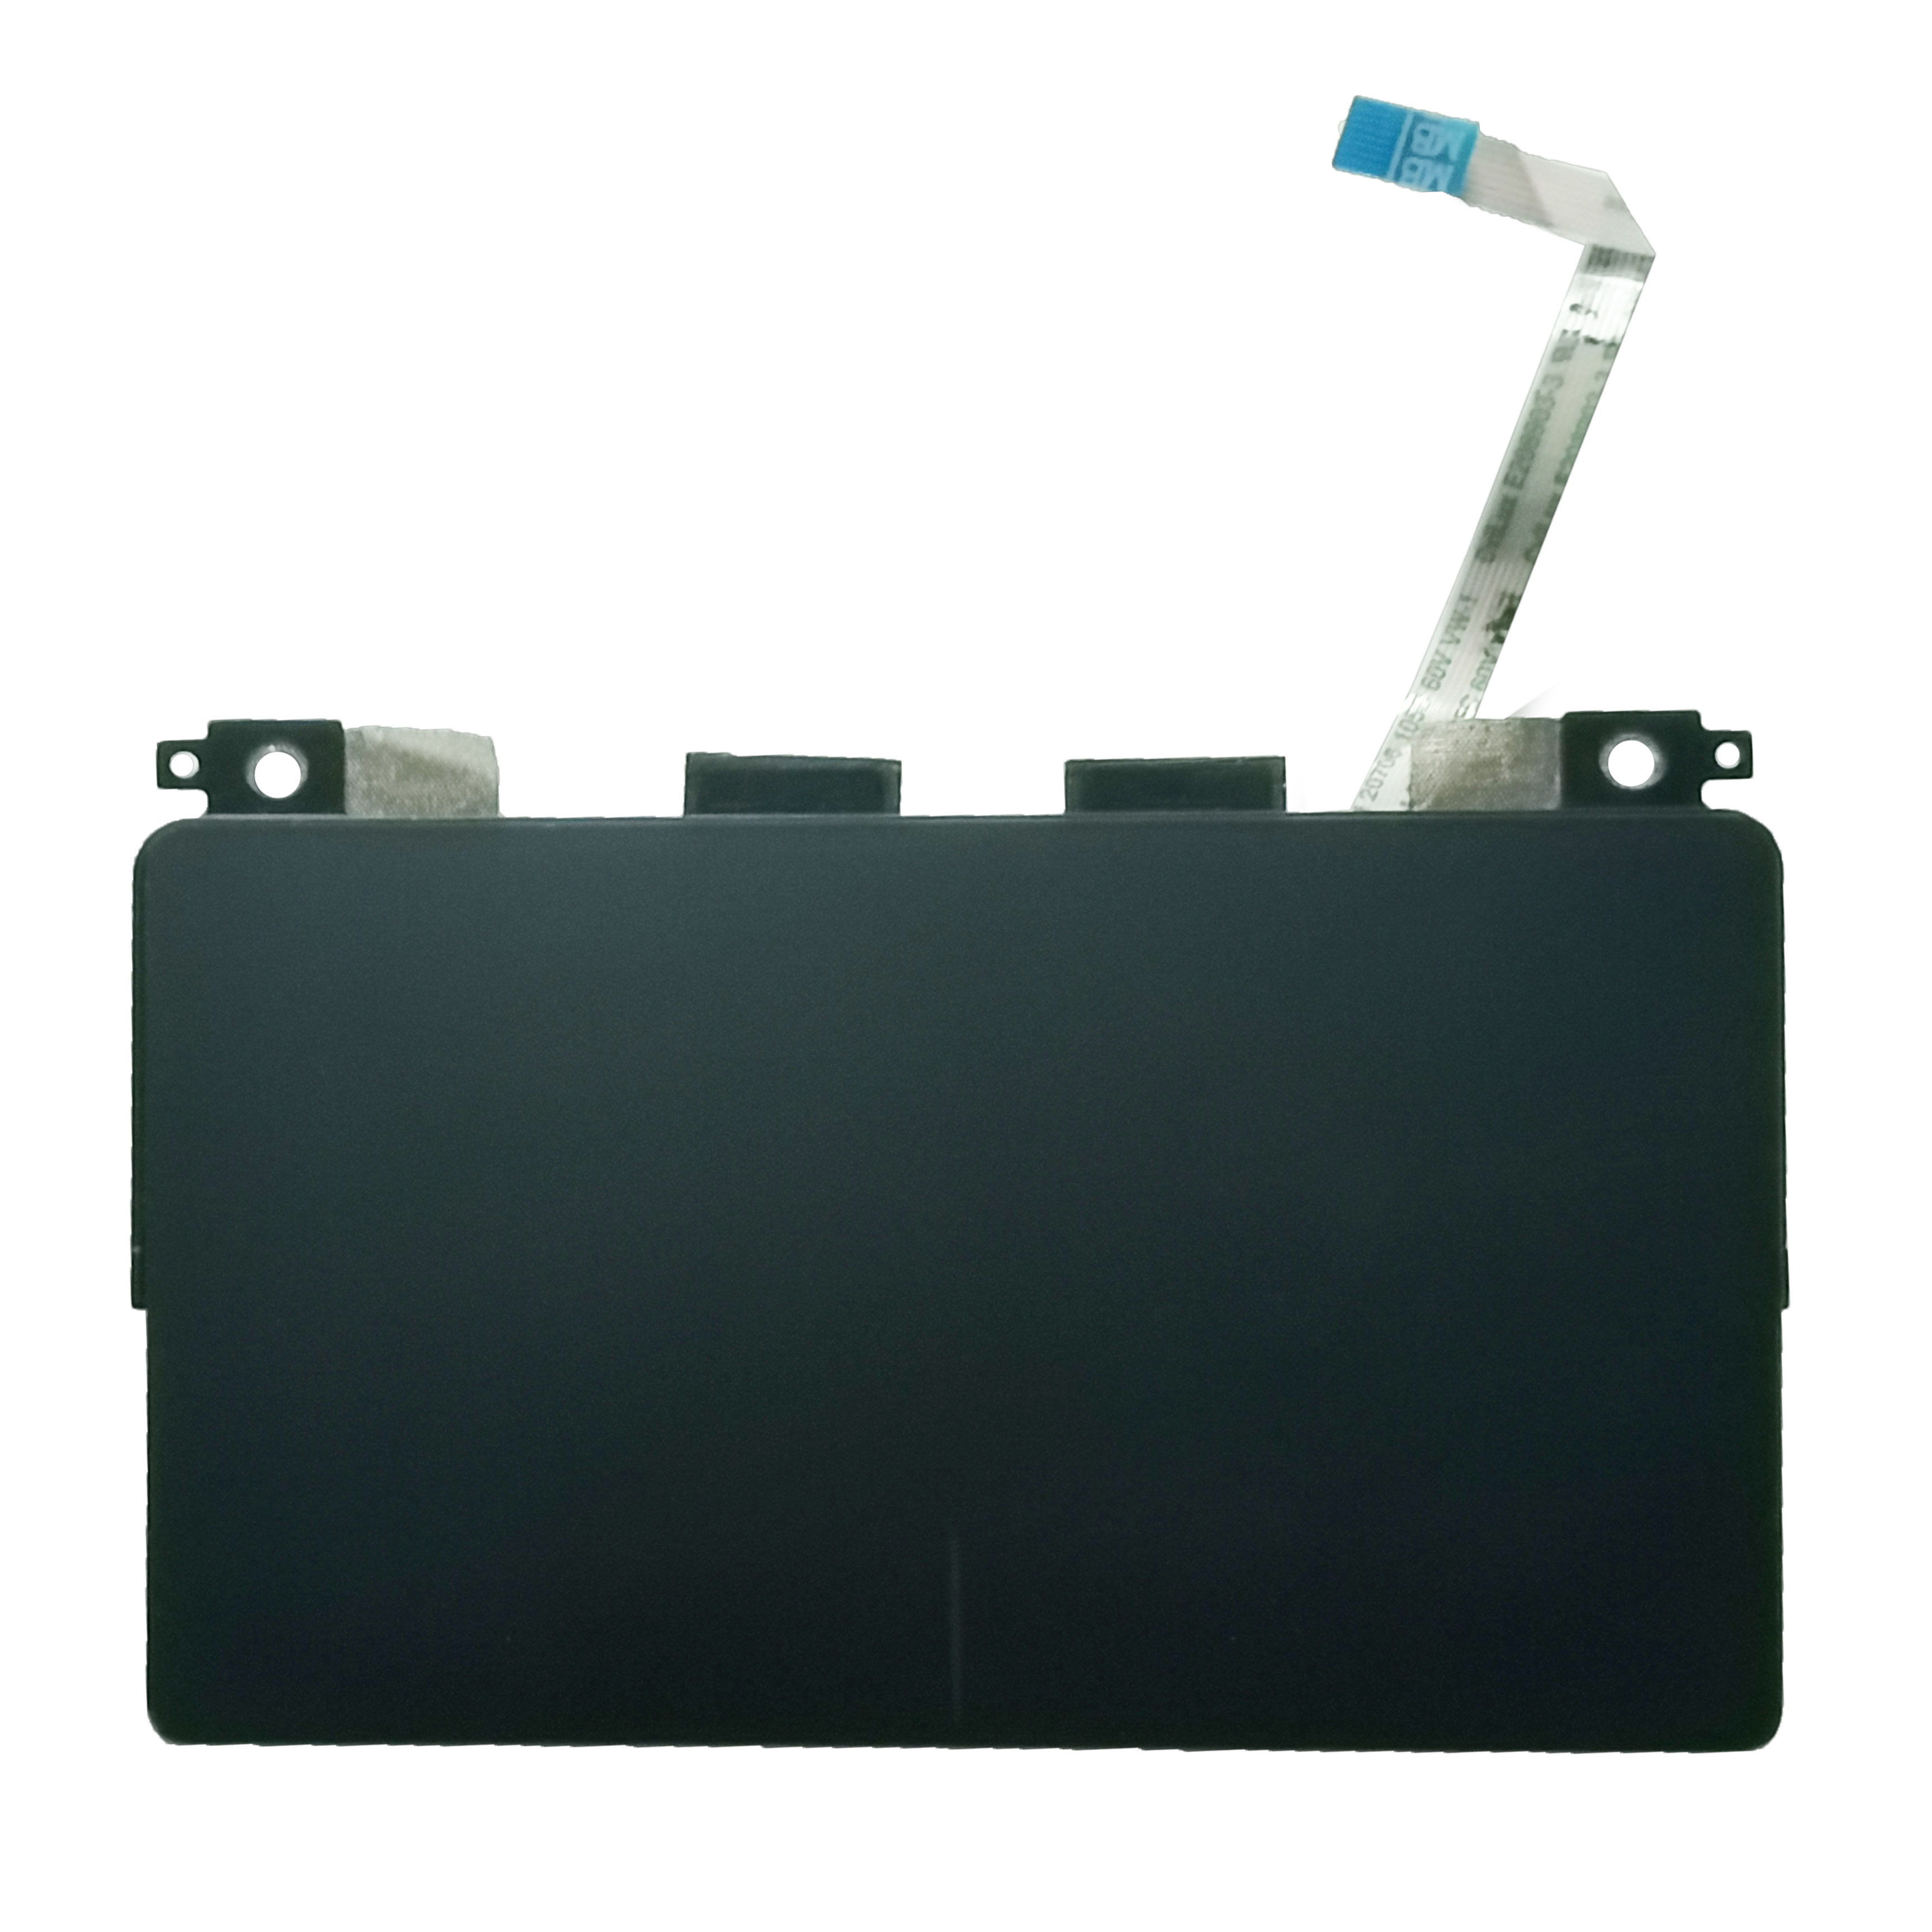 Nowy oryginalny laptop touchpad z elest kablowym dla Dell XPS 13 9370 9380 P54G 0JP4PR TM-P3038-003 Akcesoria wymiany laptopa